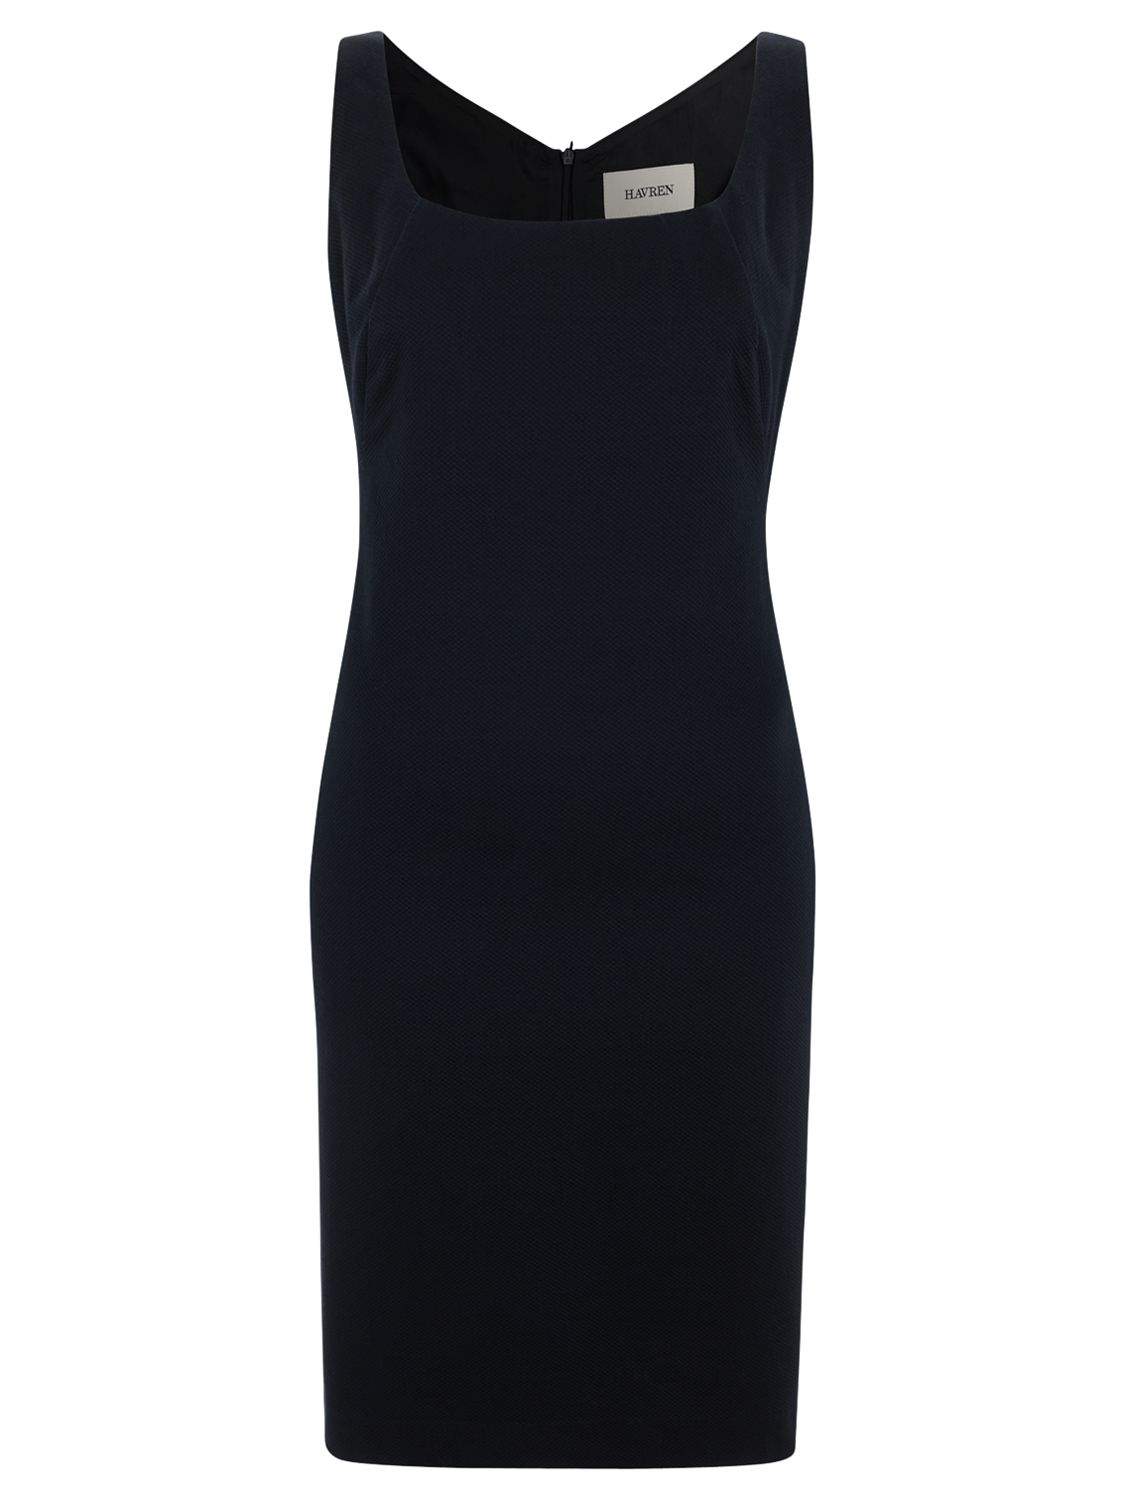 Buy Havren Scoop Neck Dress, Sapphire Online at johnlewis.com